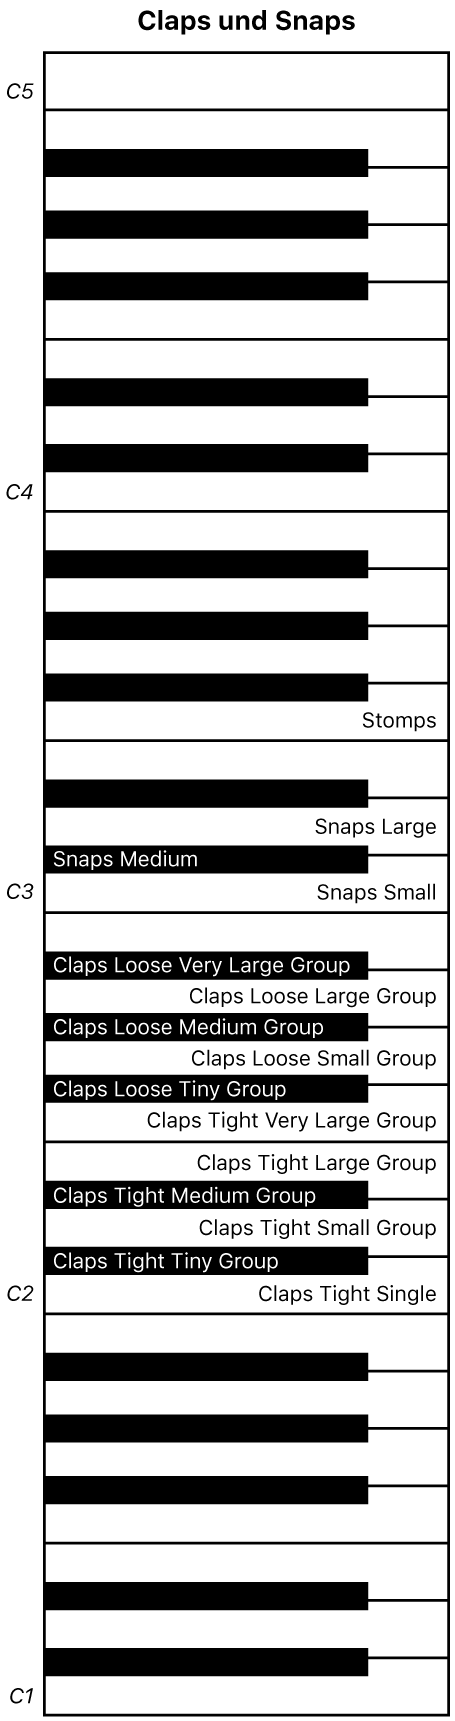 Abbildung. Keyboard-Zuweisung für Claps- und Snaps-Performance